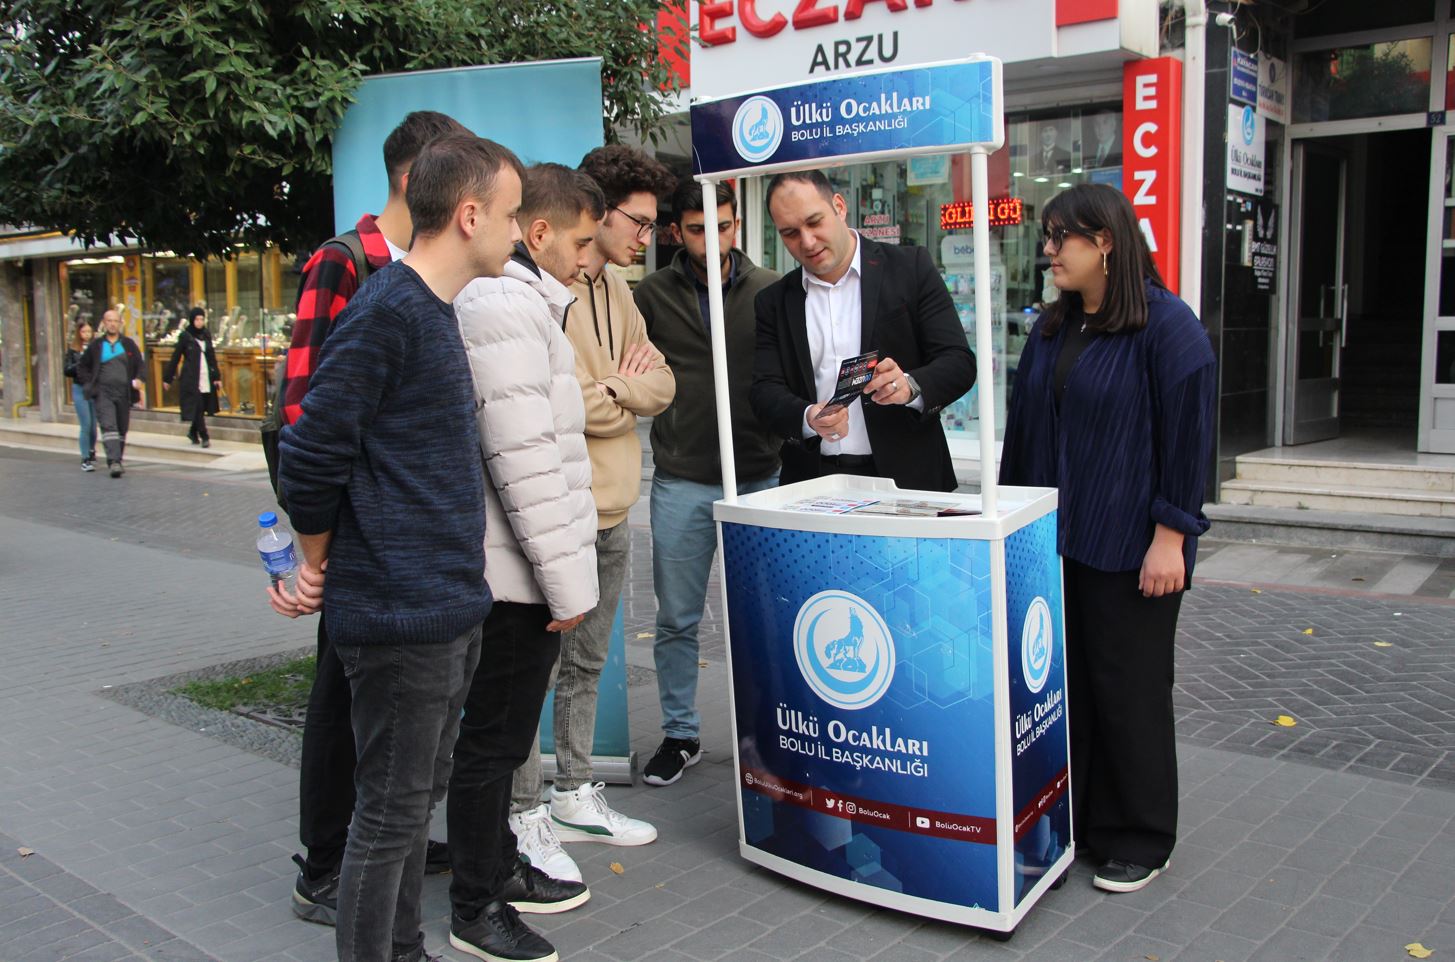 Bolu ülkü ocakları, türk gençliğine ülkü ocakları uzaktan eğitim programını tanıttı